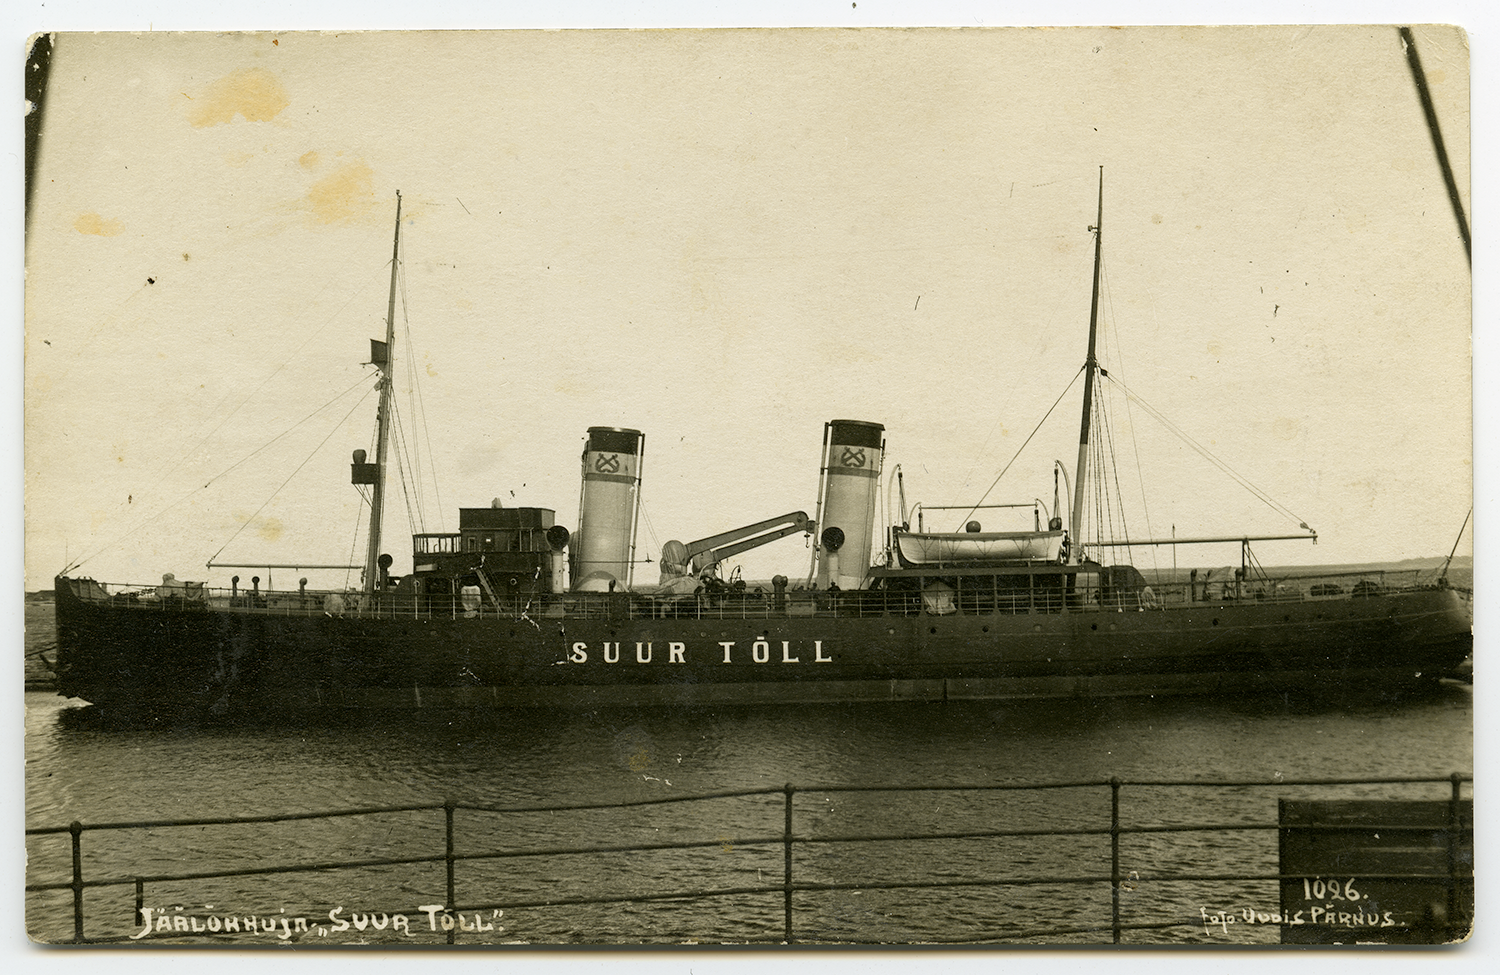 Jäämurdja Suur Tõll Pärnus, 1926. Laeva korstnatel on Veeteede Valitsuse korstnamärgid. Foto: Eesti Meremuuseum